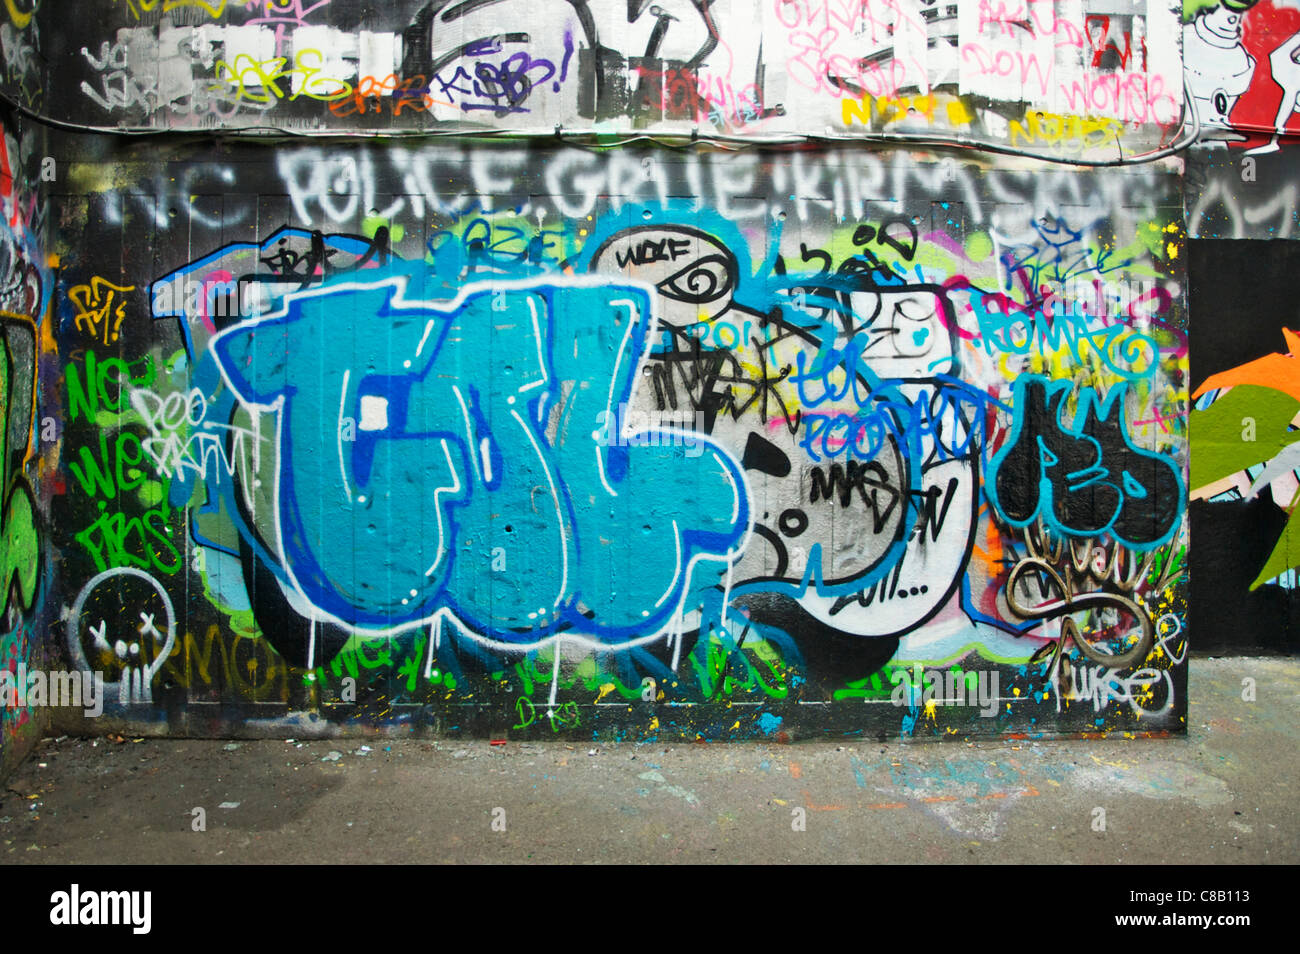 Graffitti on wall at South Bank, London UK Stock Photo